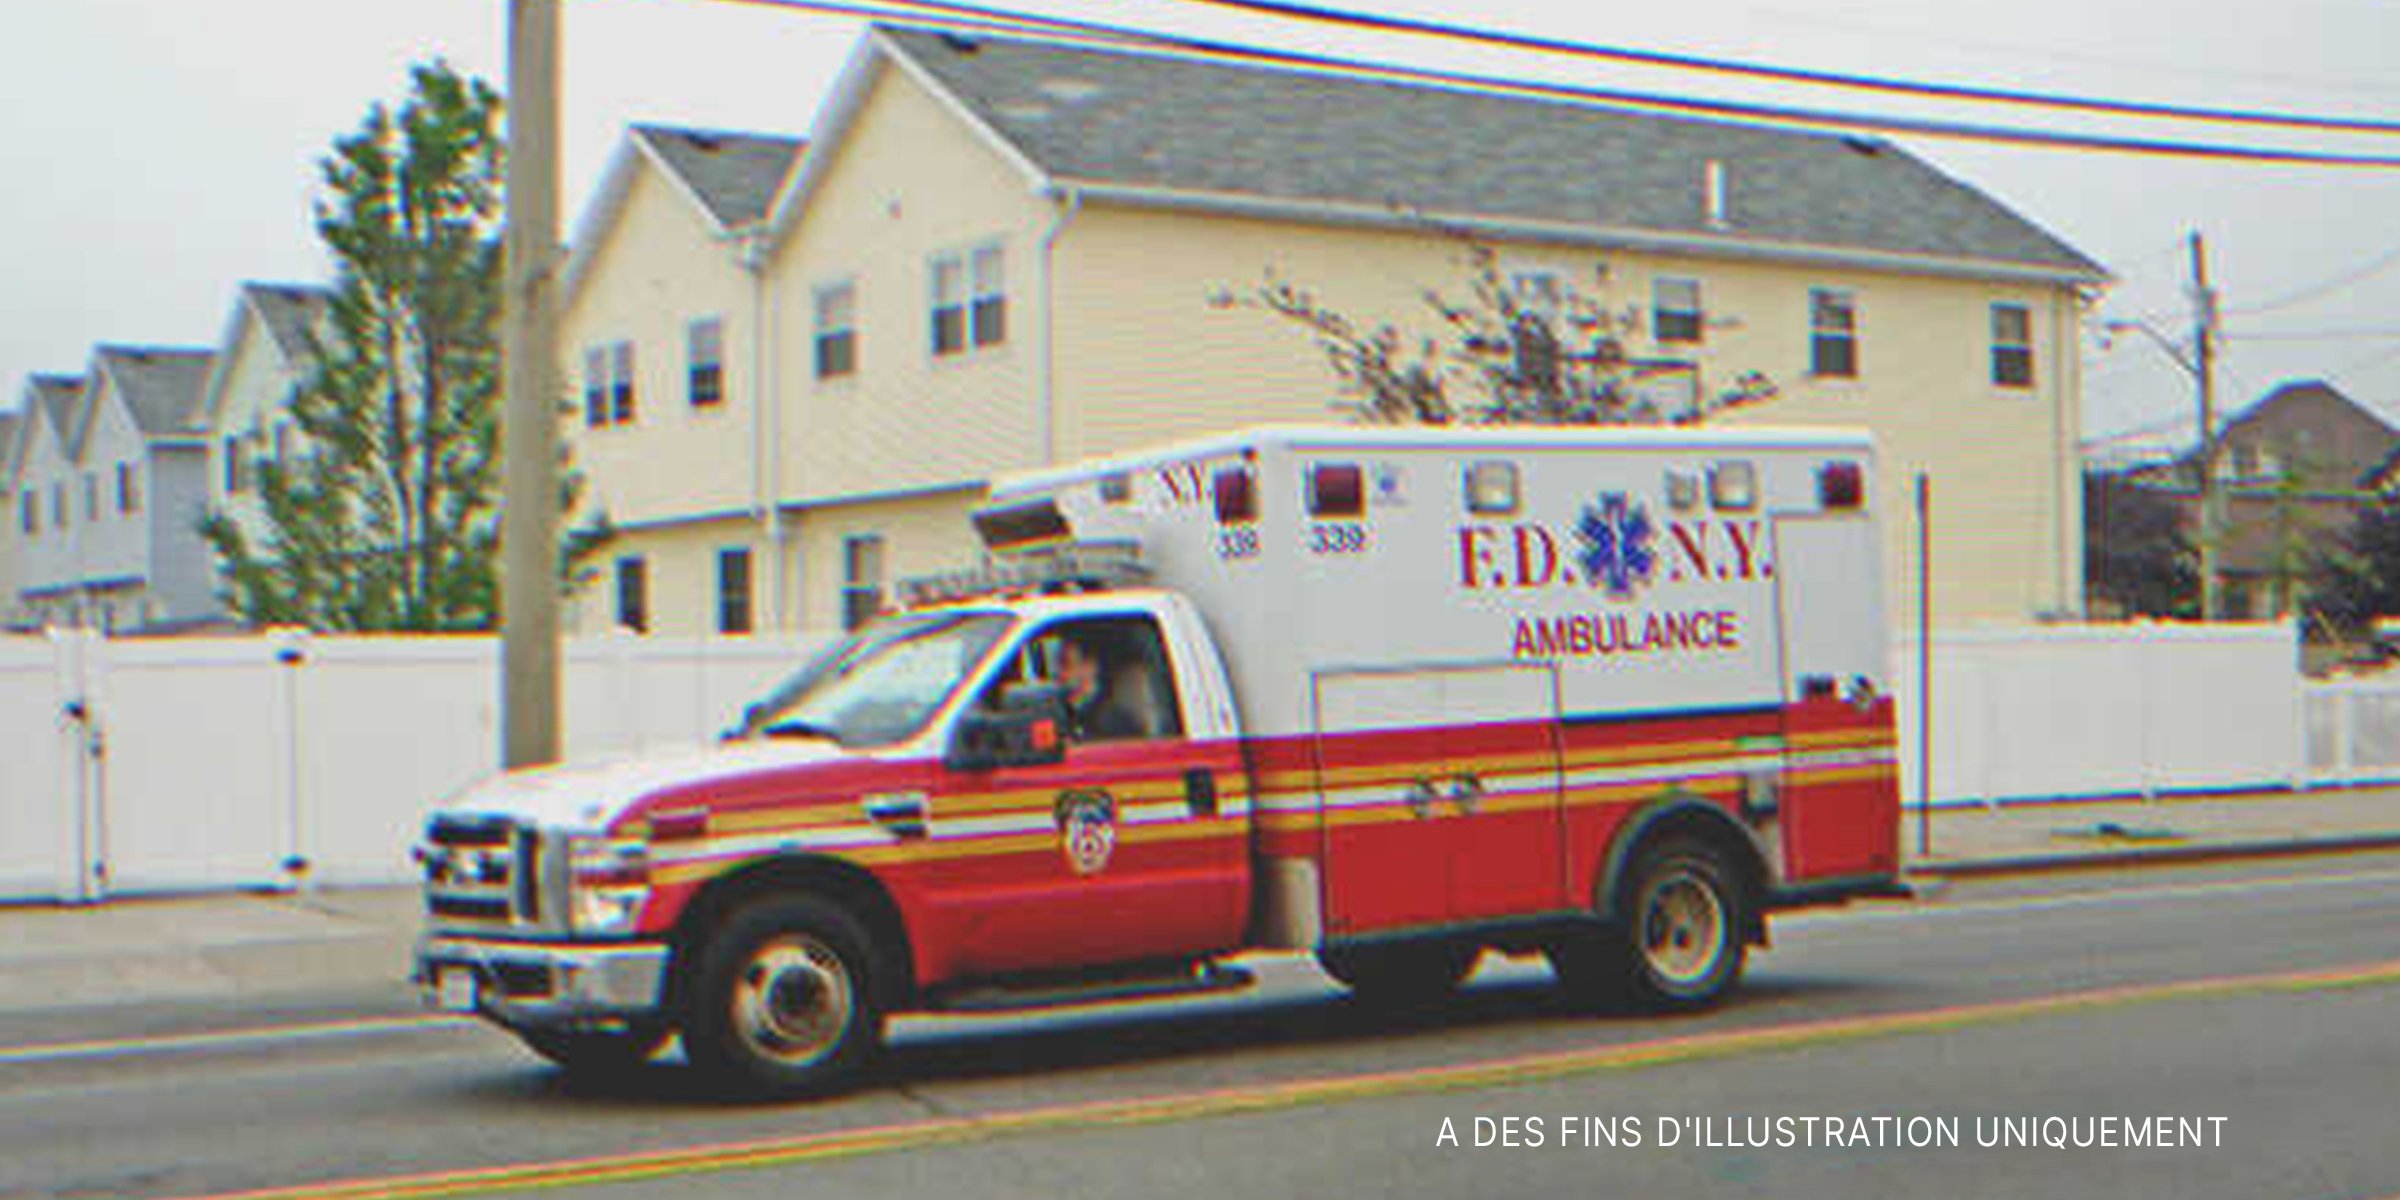 Ambulance transportant une femme à l'hôpital | Source : Flickr / JLaw45 (CC BY 2.0)